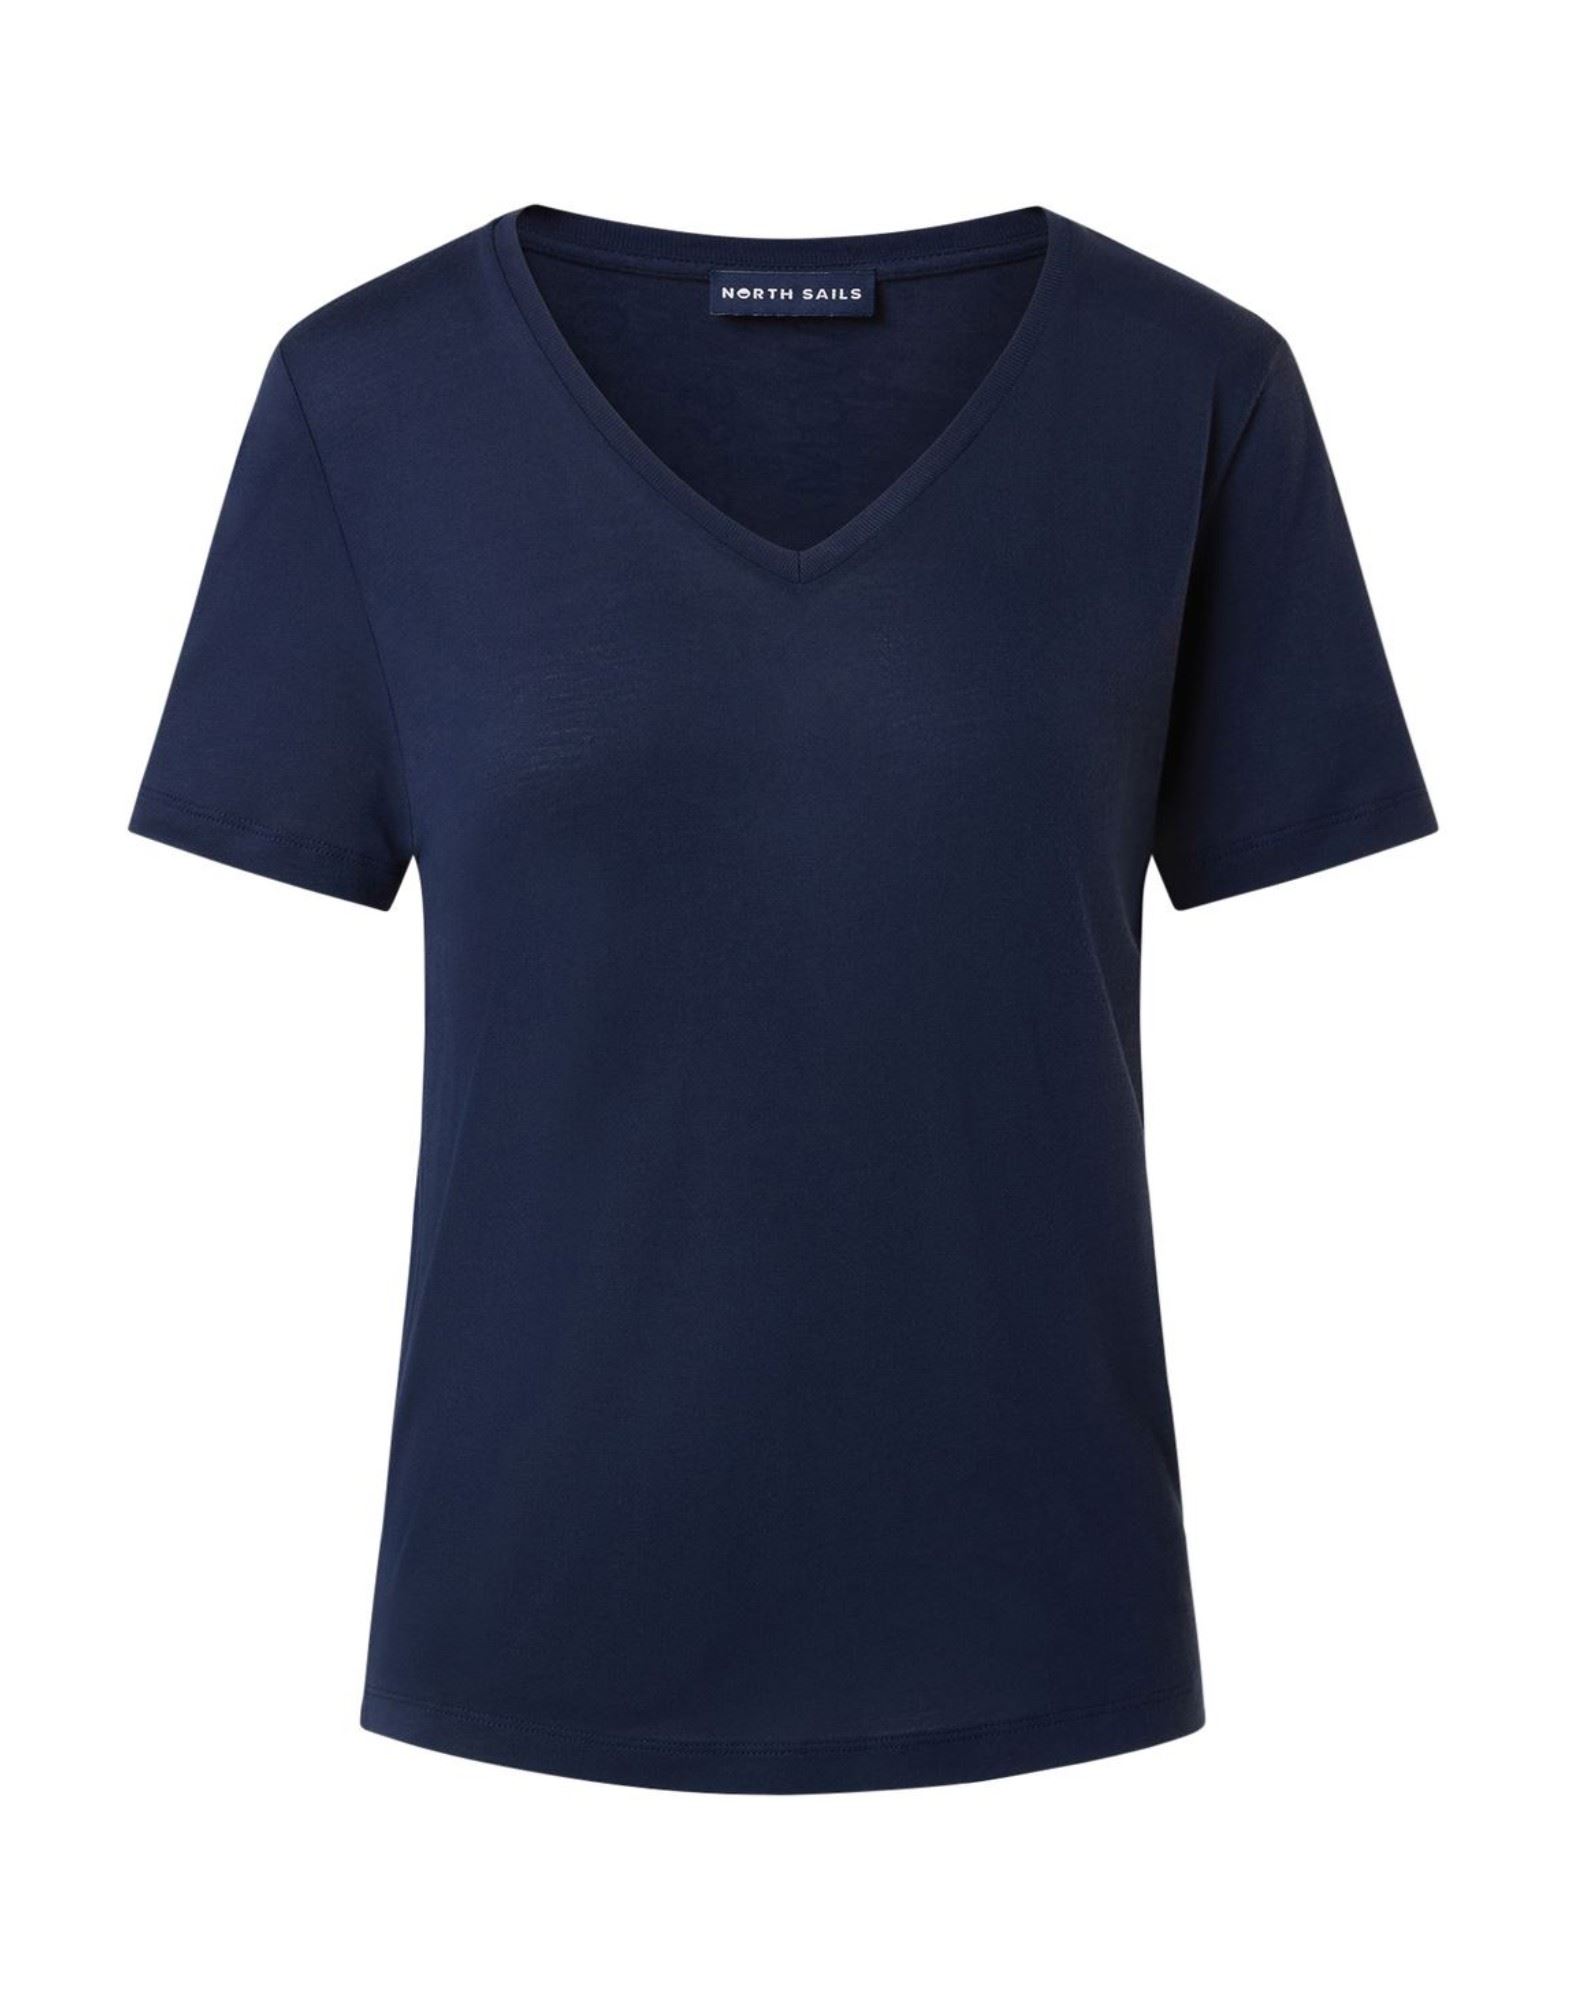 NORTH SAILS T-shirts Damen Blau von NORTH SAILS